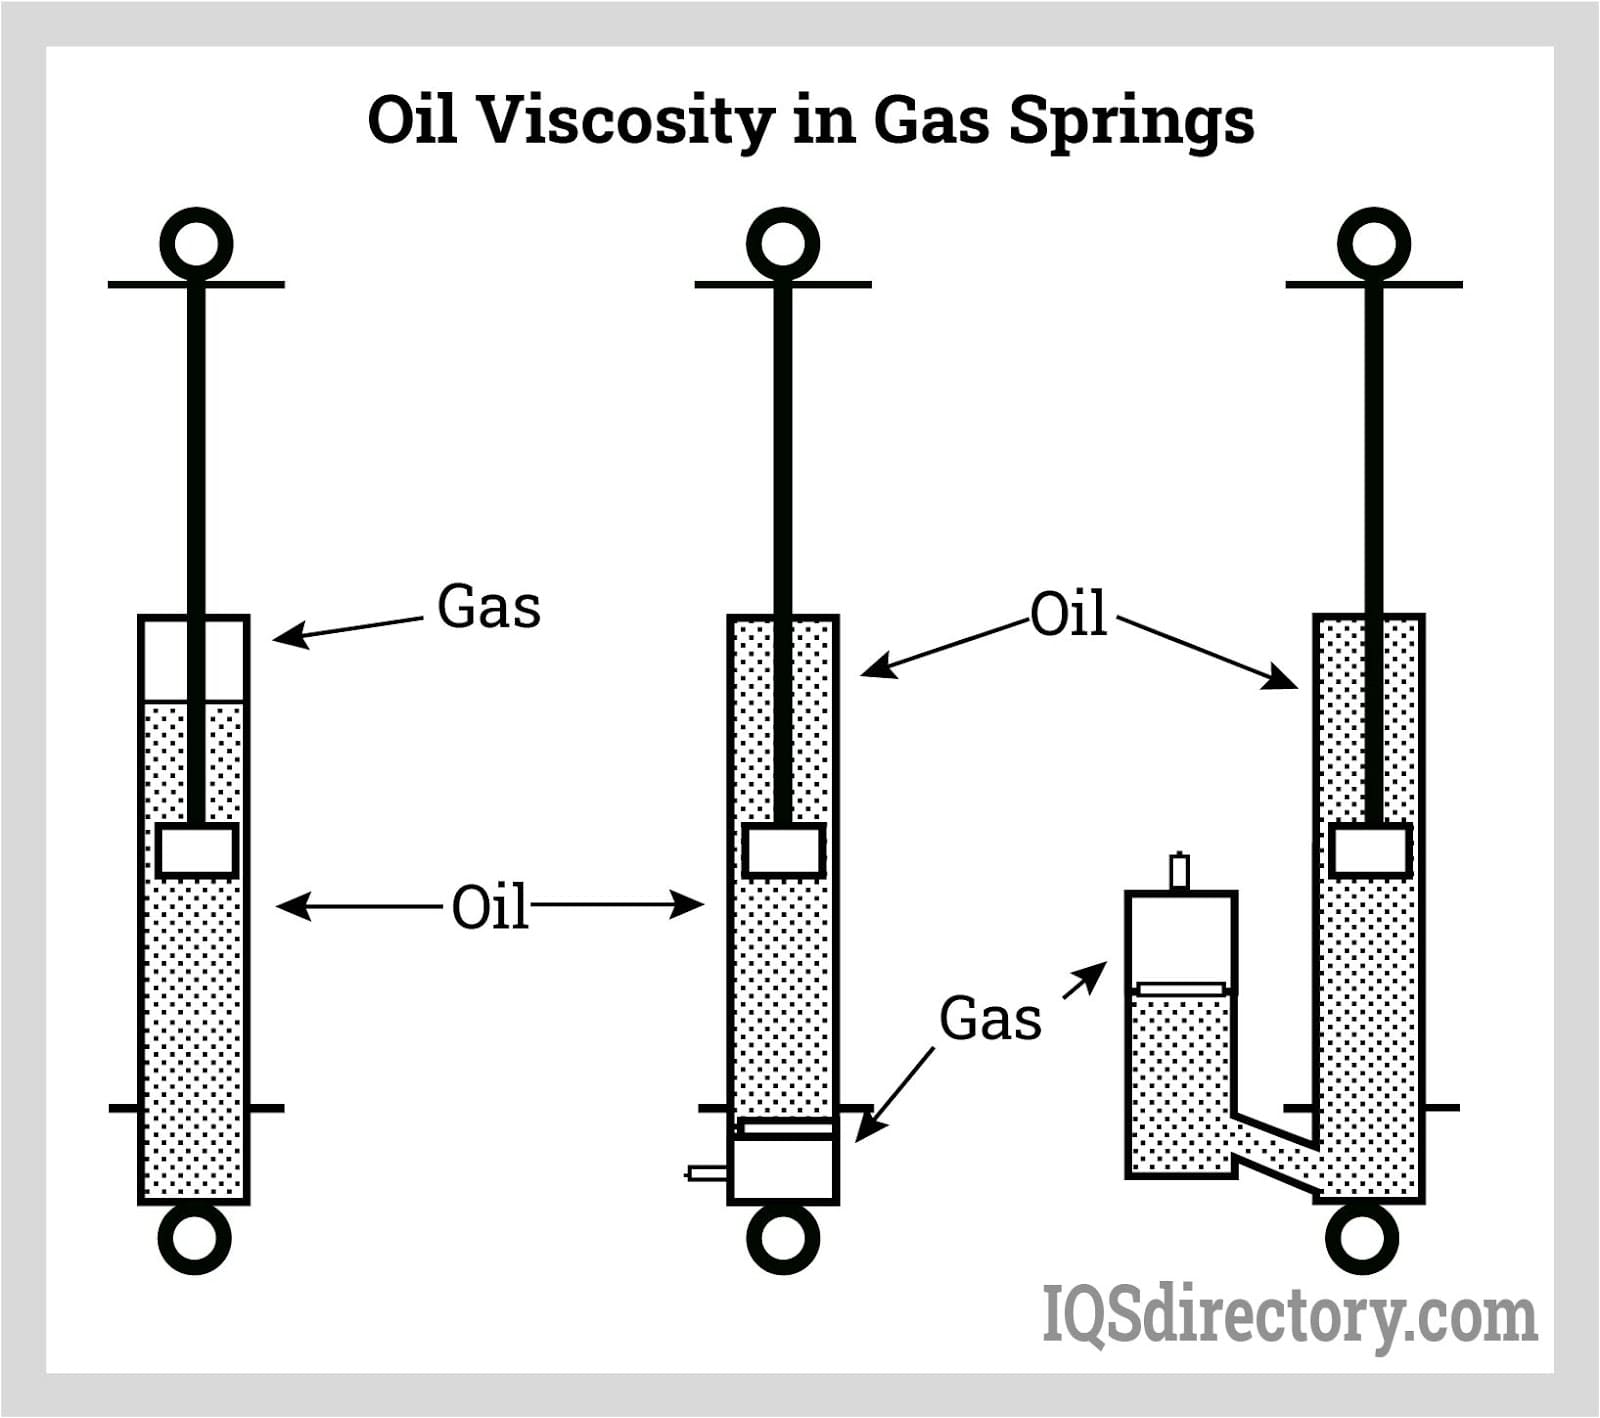 Oil Viscosity in Gas Springs